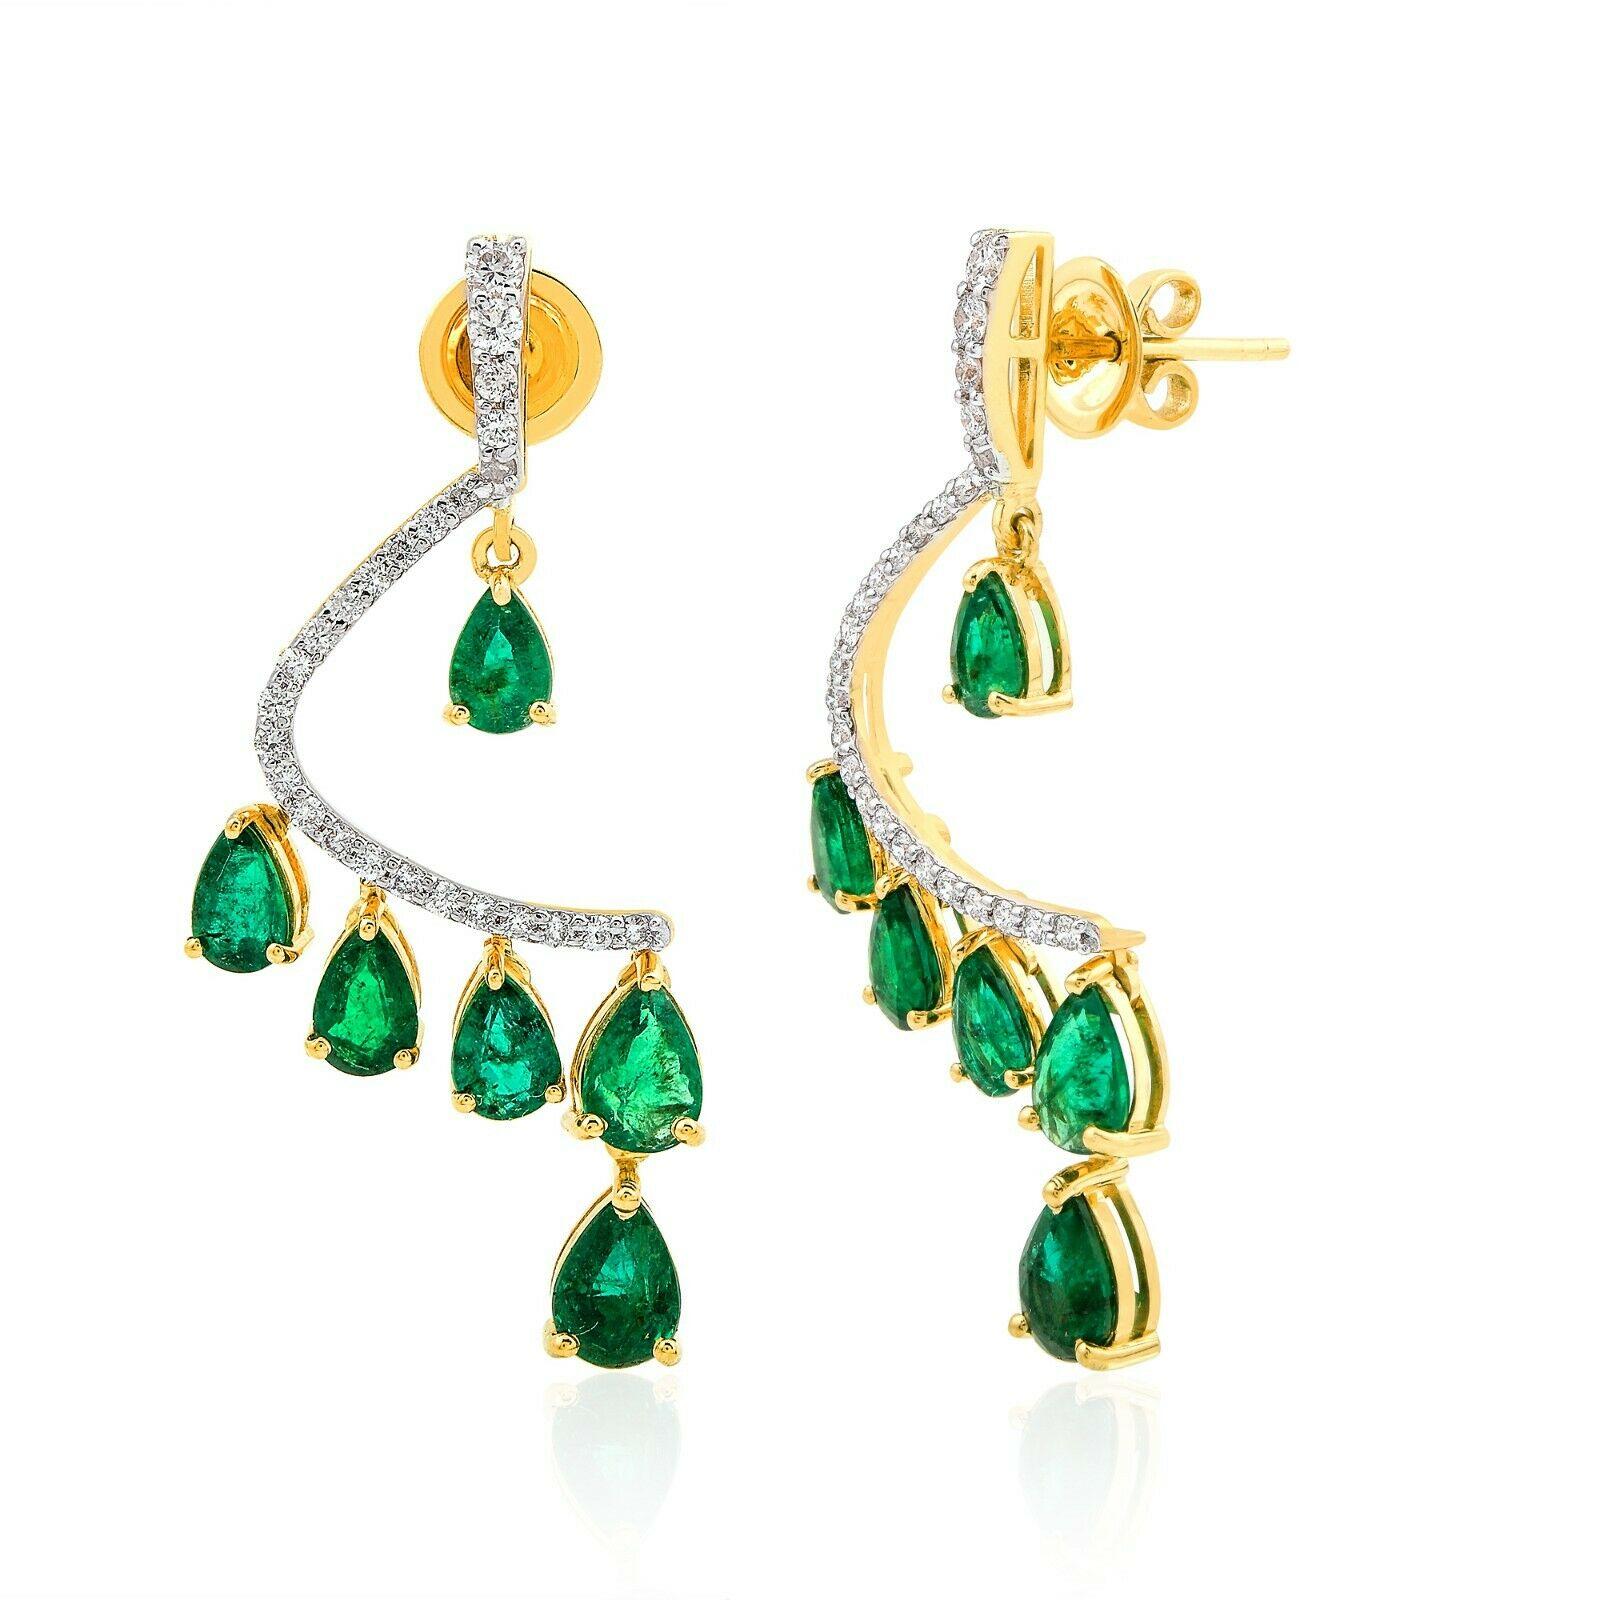 Mixed Cut 5.28 Carats Zambian Emerald Diamond 14 Karat Gold Earrings For Sale